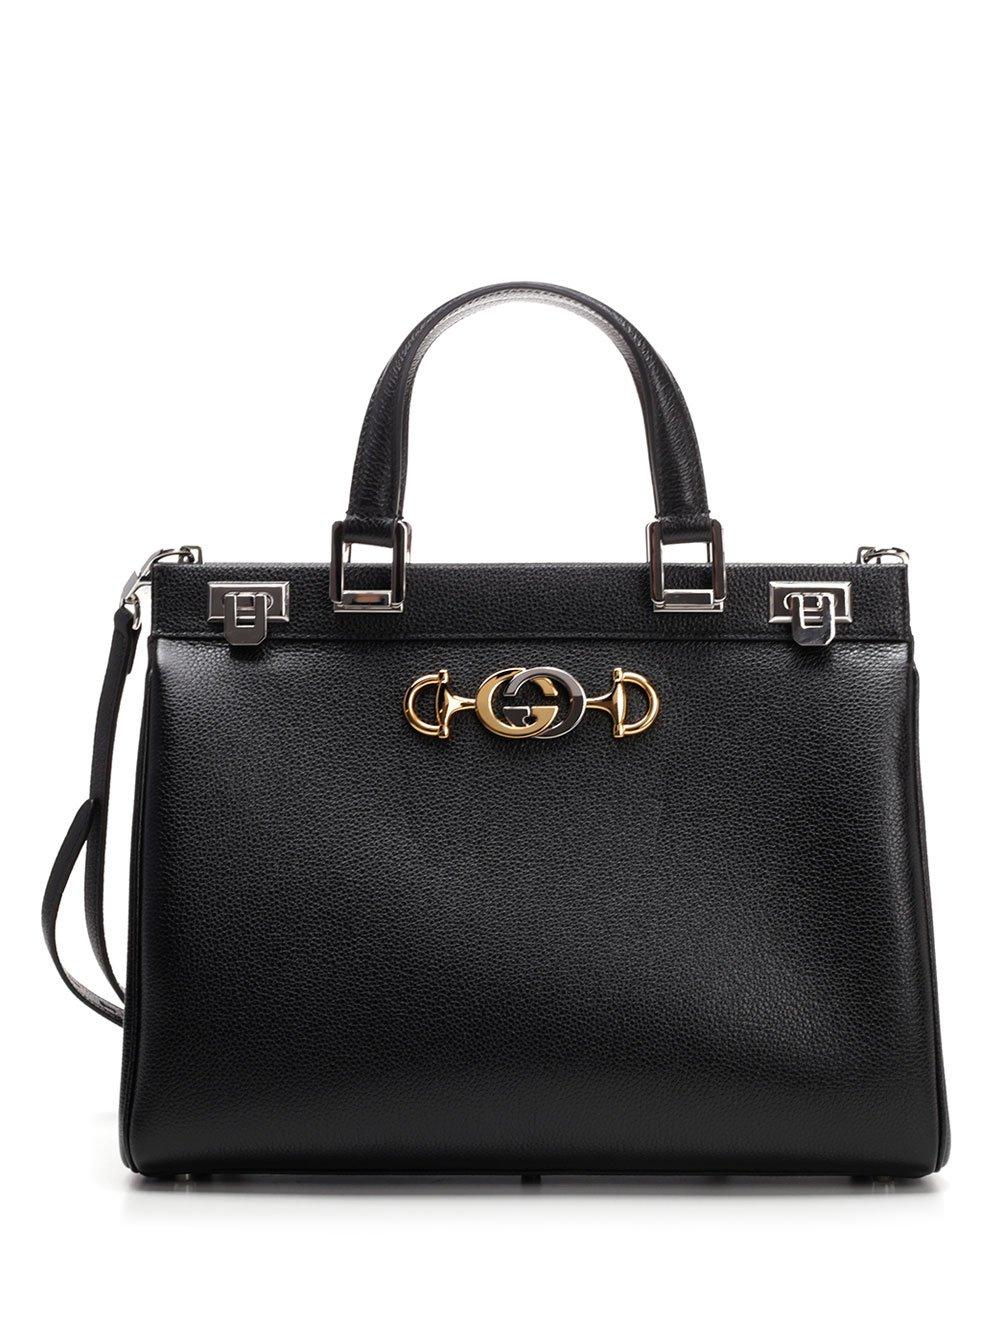 Gucci Zumi Medium Tote Bag in Black - Lyst